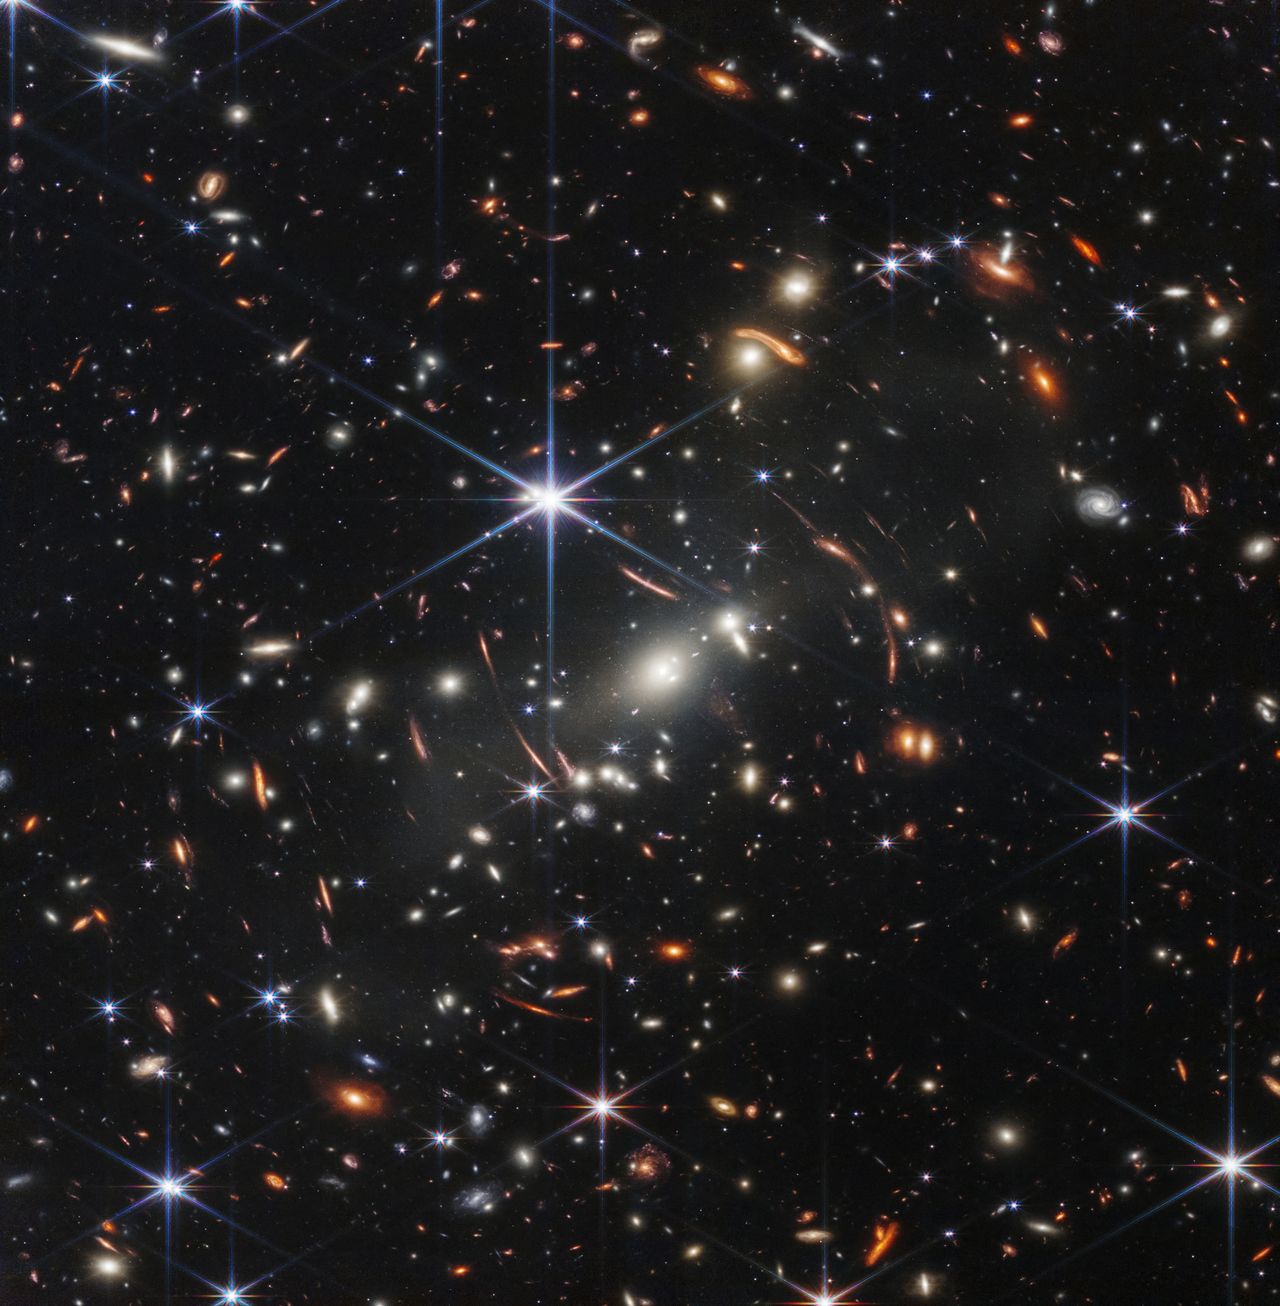 Το γαλαξιακό σμήνος με την ονομασία SMACS 0723, ηλικίας 4,6 δισεκατομμυρίων ετών,